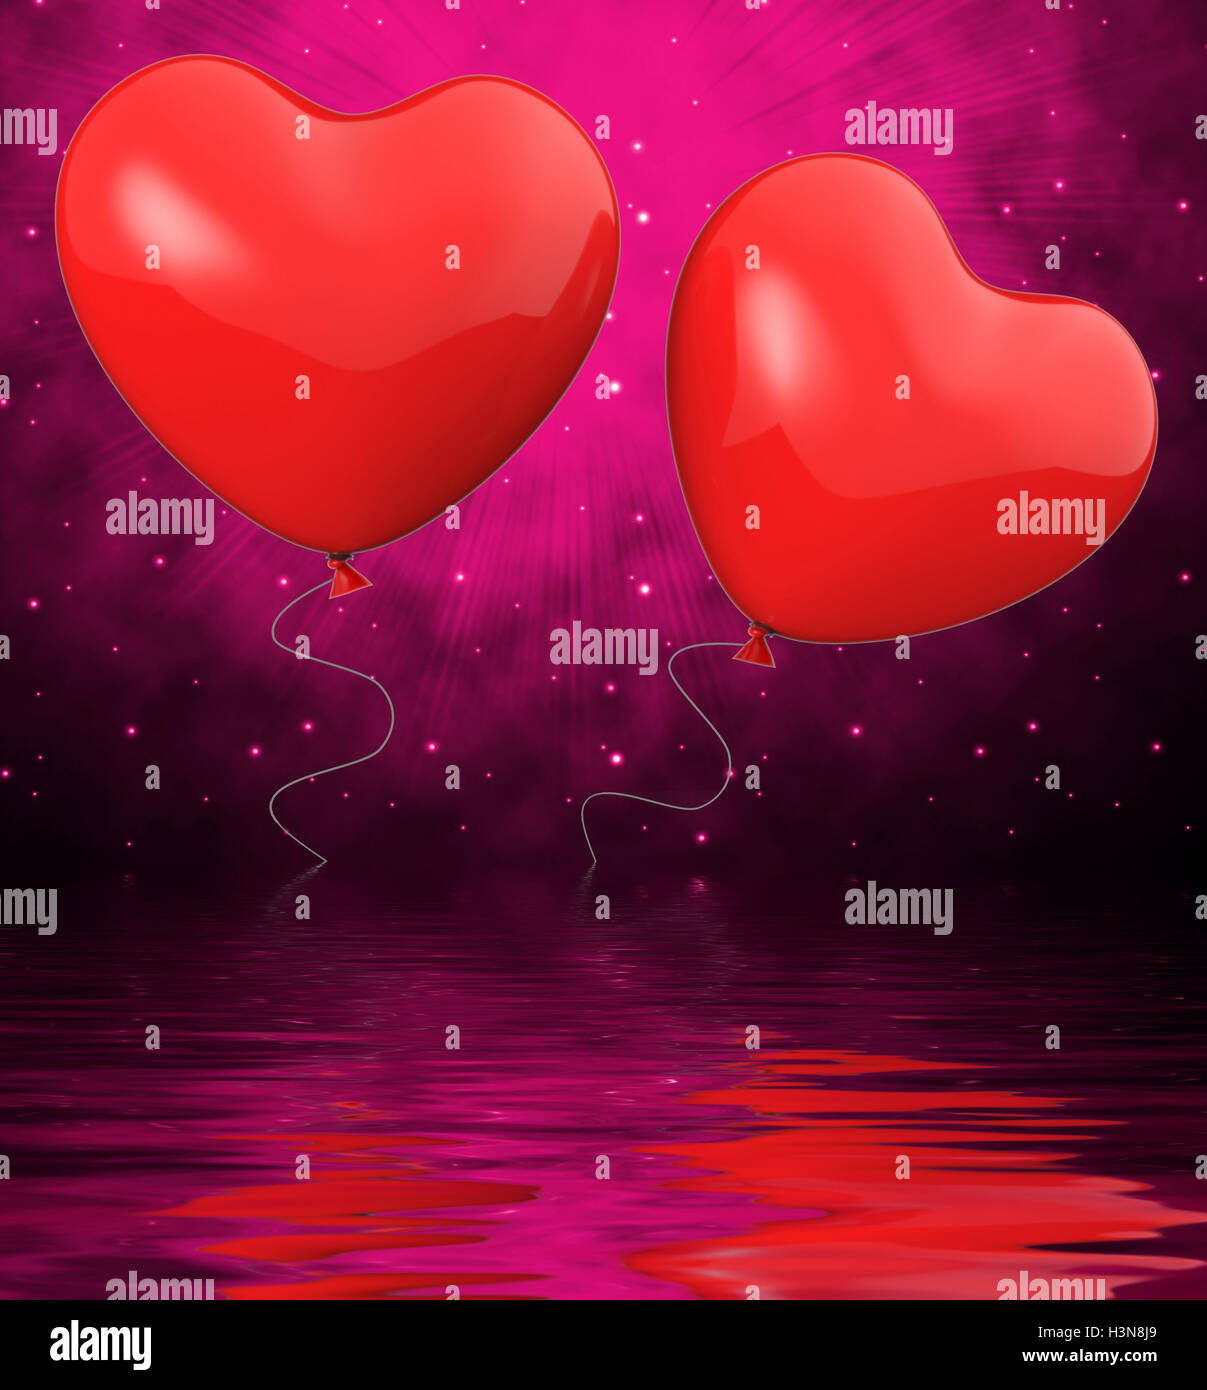 Ballons coeur affiche attraction mutuelle et d'affection Banque D'Images